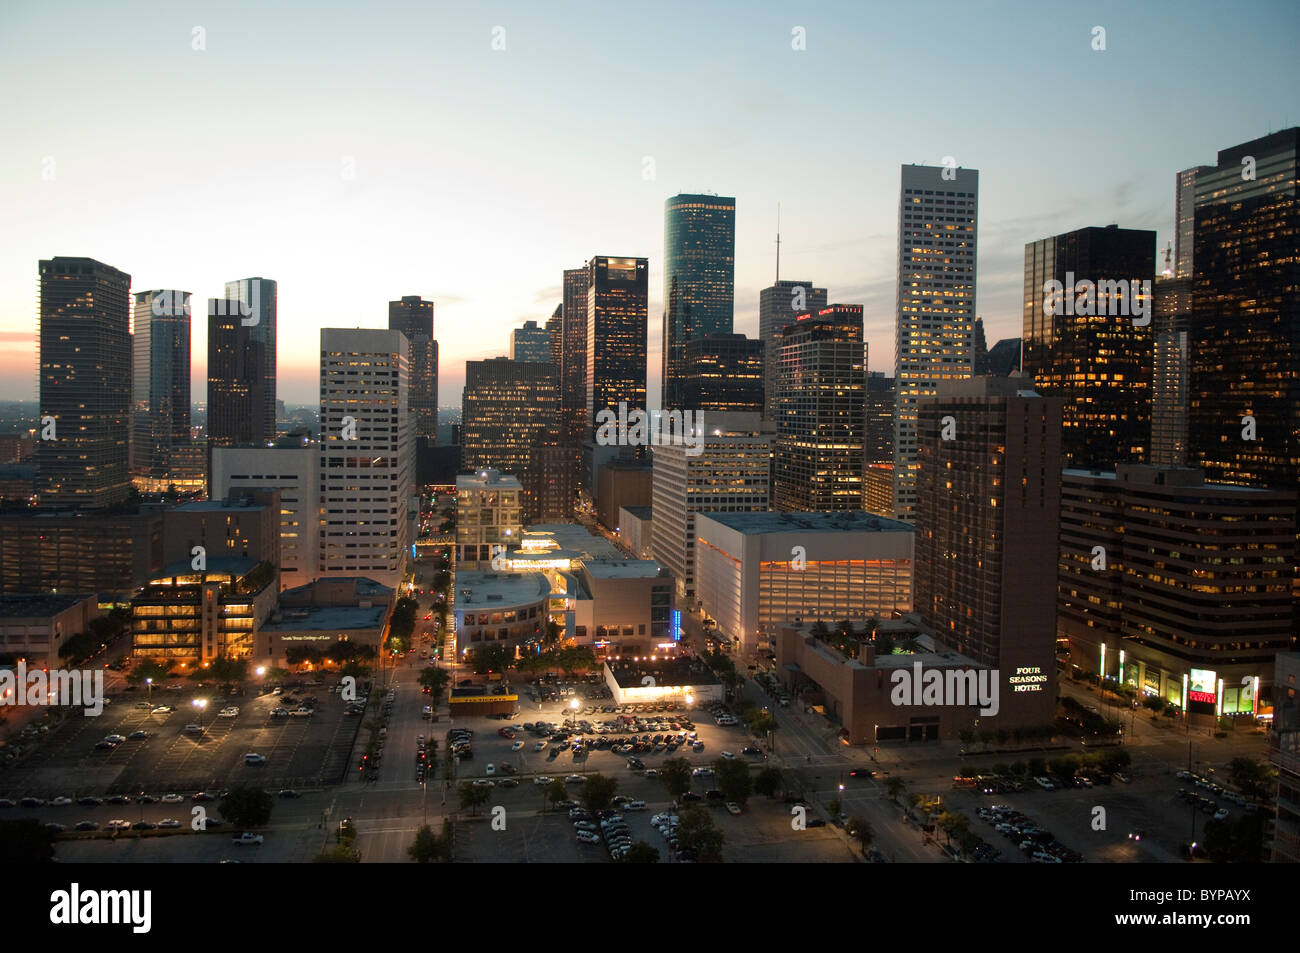 Skyline of downtown Houston, Texas, USA Stock Photo